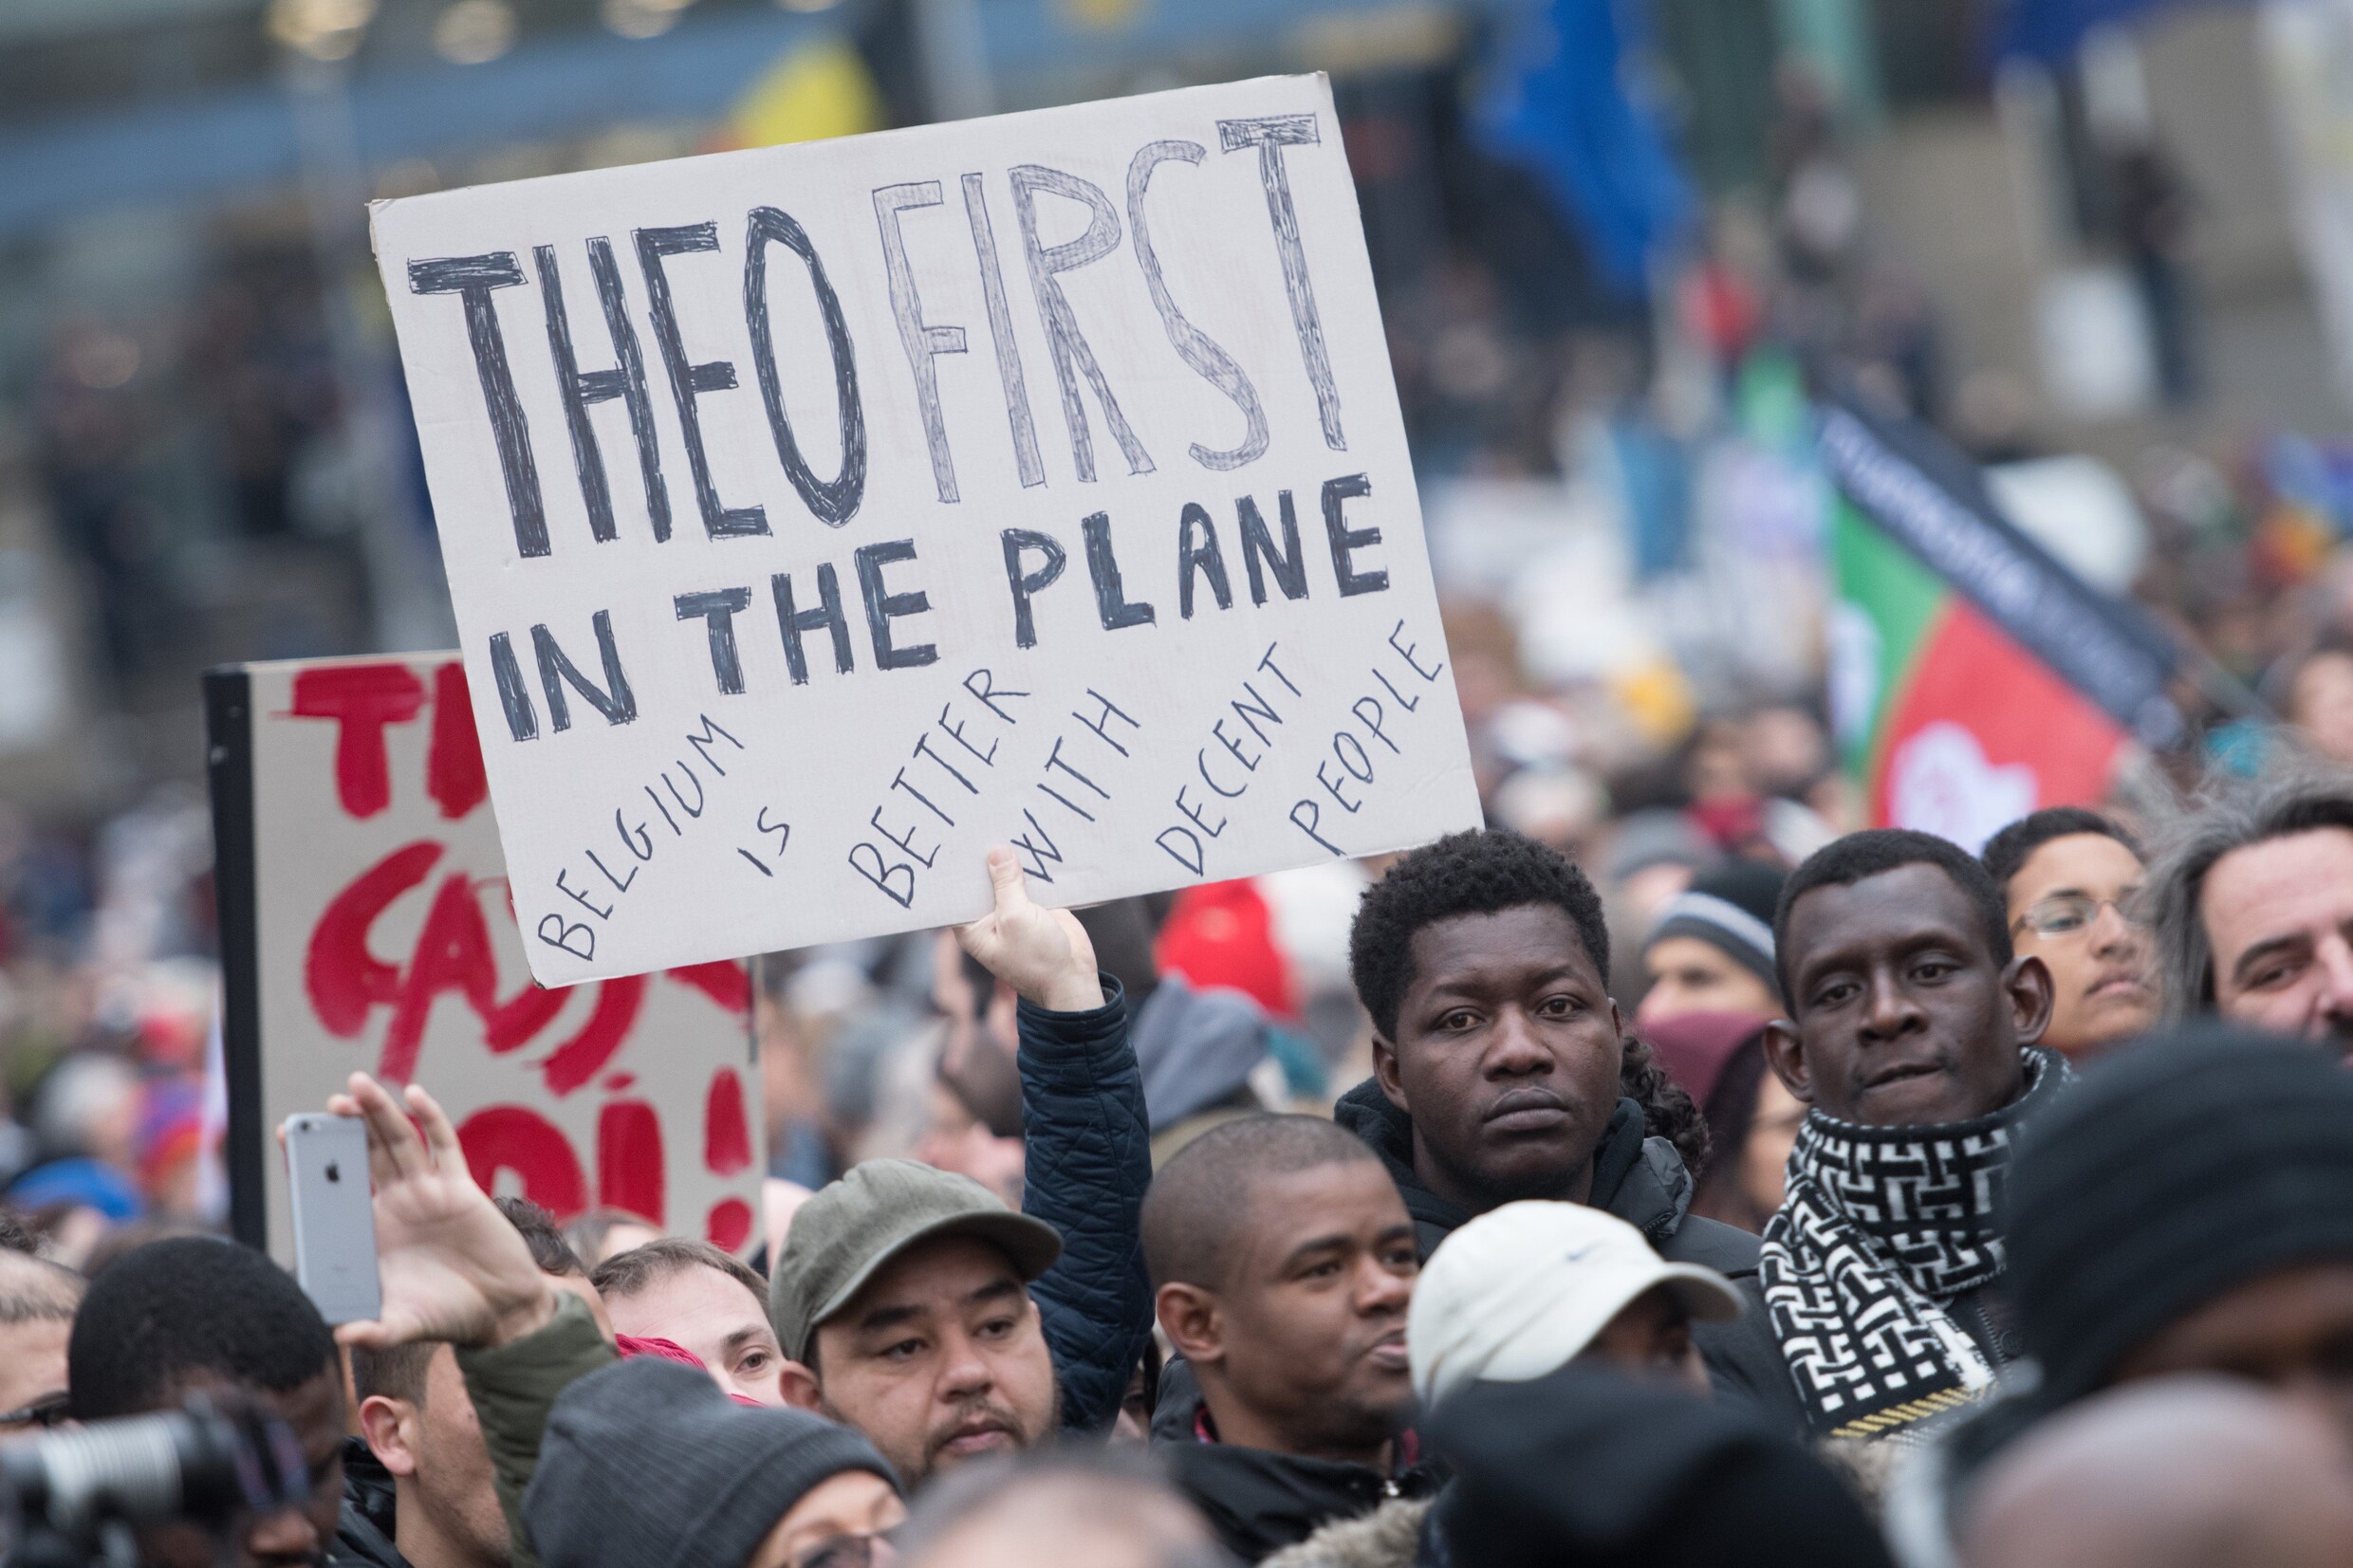 6.600 manifestanten vragen ontslag van Francken: "Theo moet als eerste het vliegtuig op"